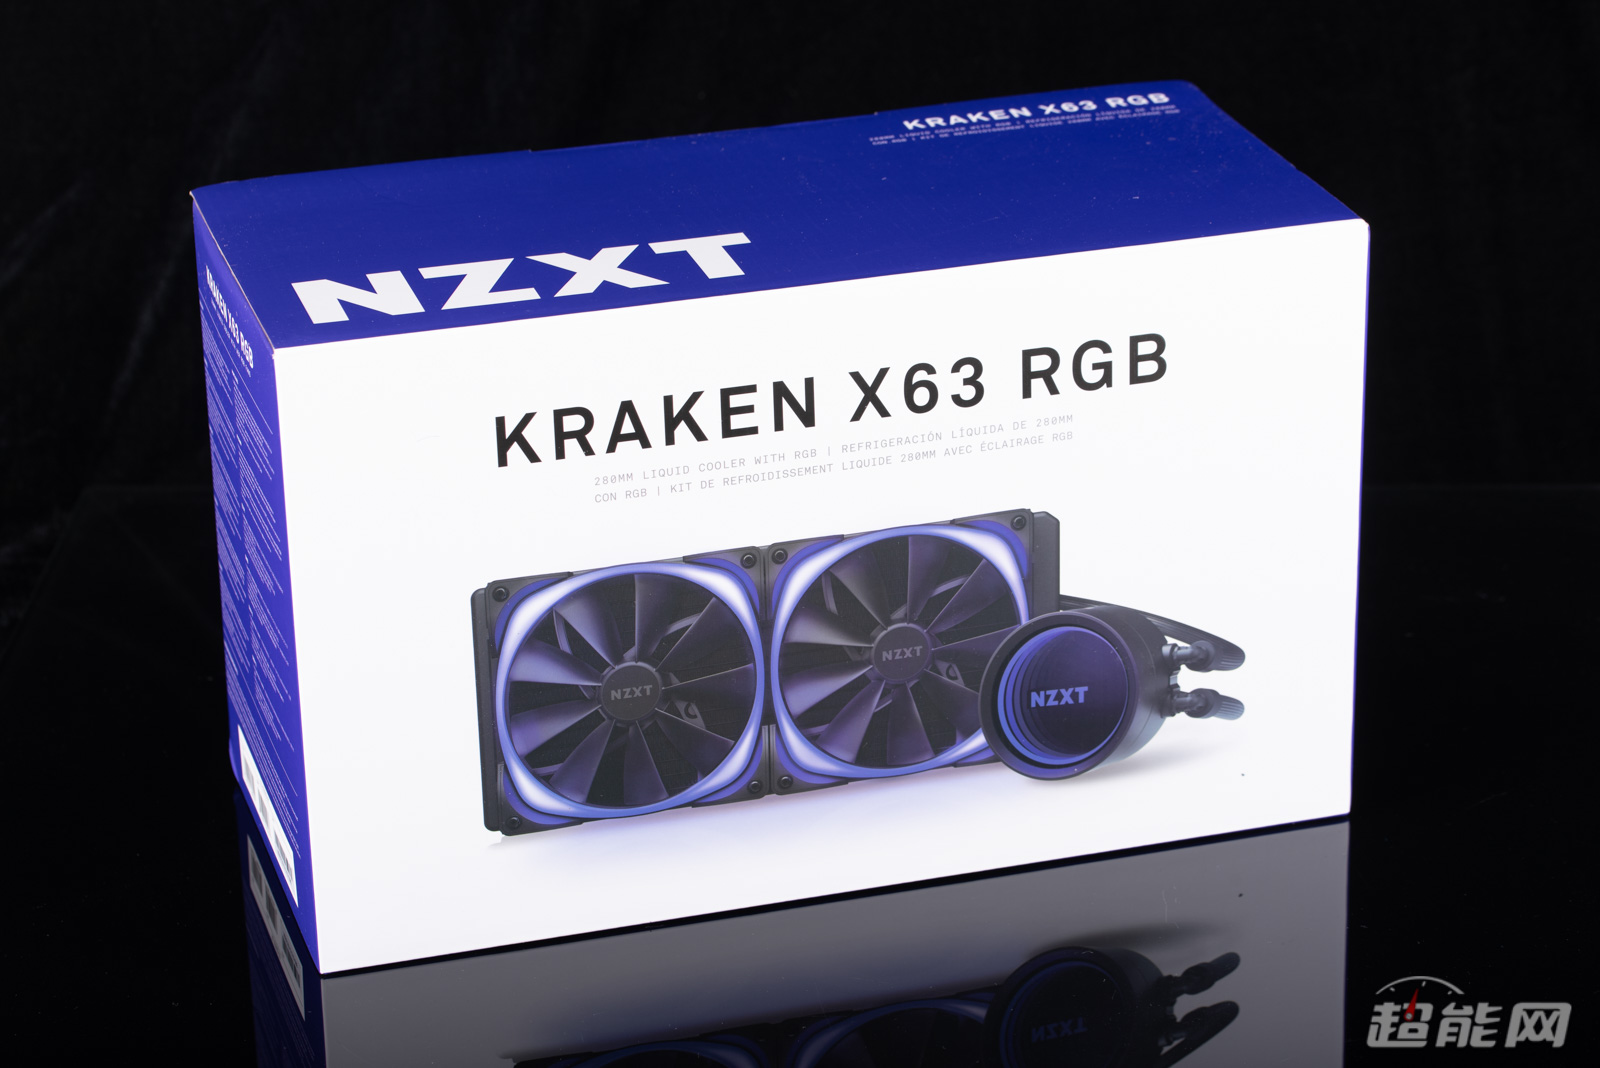 Nzxt Kraken X63 Rgb 280水冷评测 散热强悍更多兼容 超能网